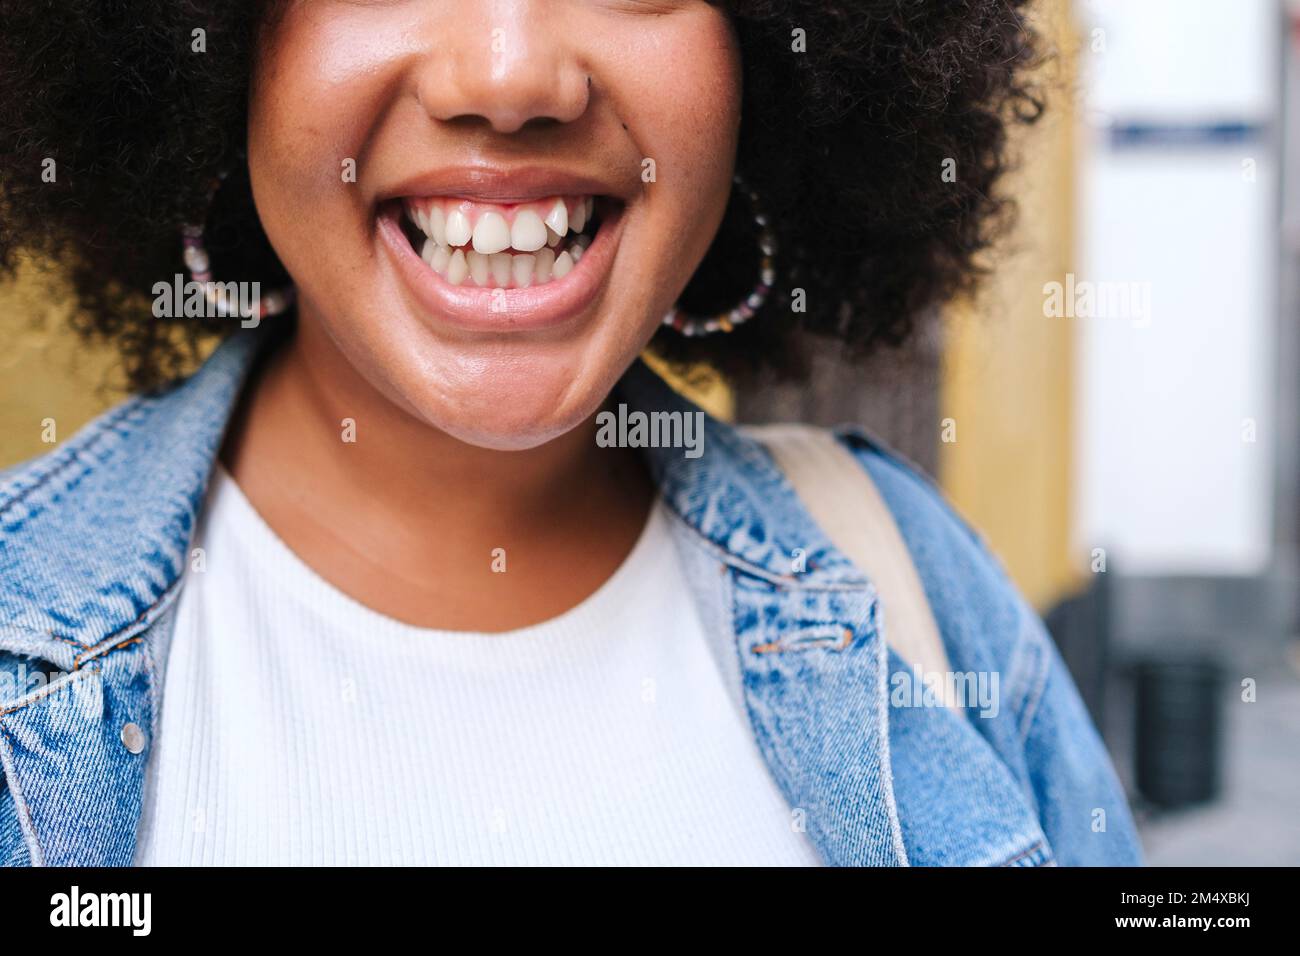 Mujer joven alegre que muestra sonrisa dentada Foto de stock